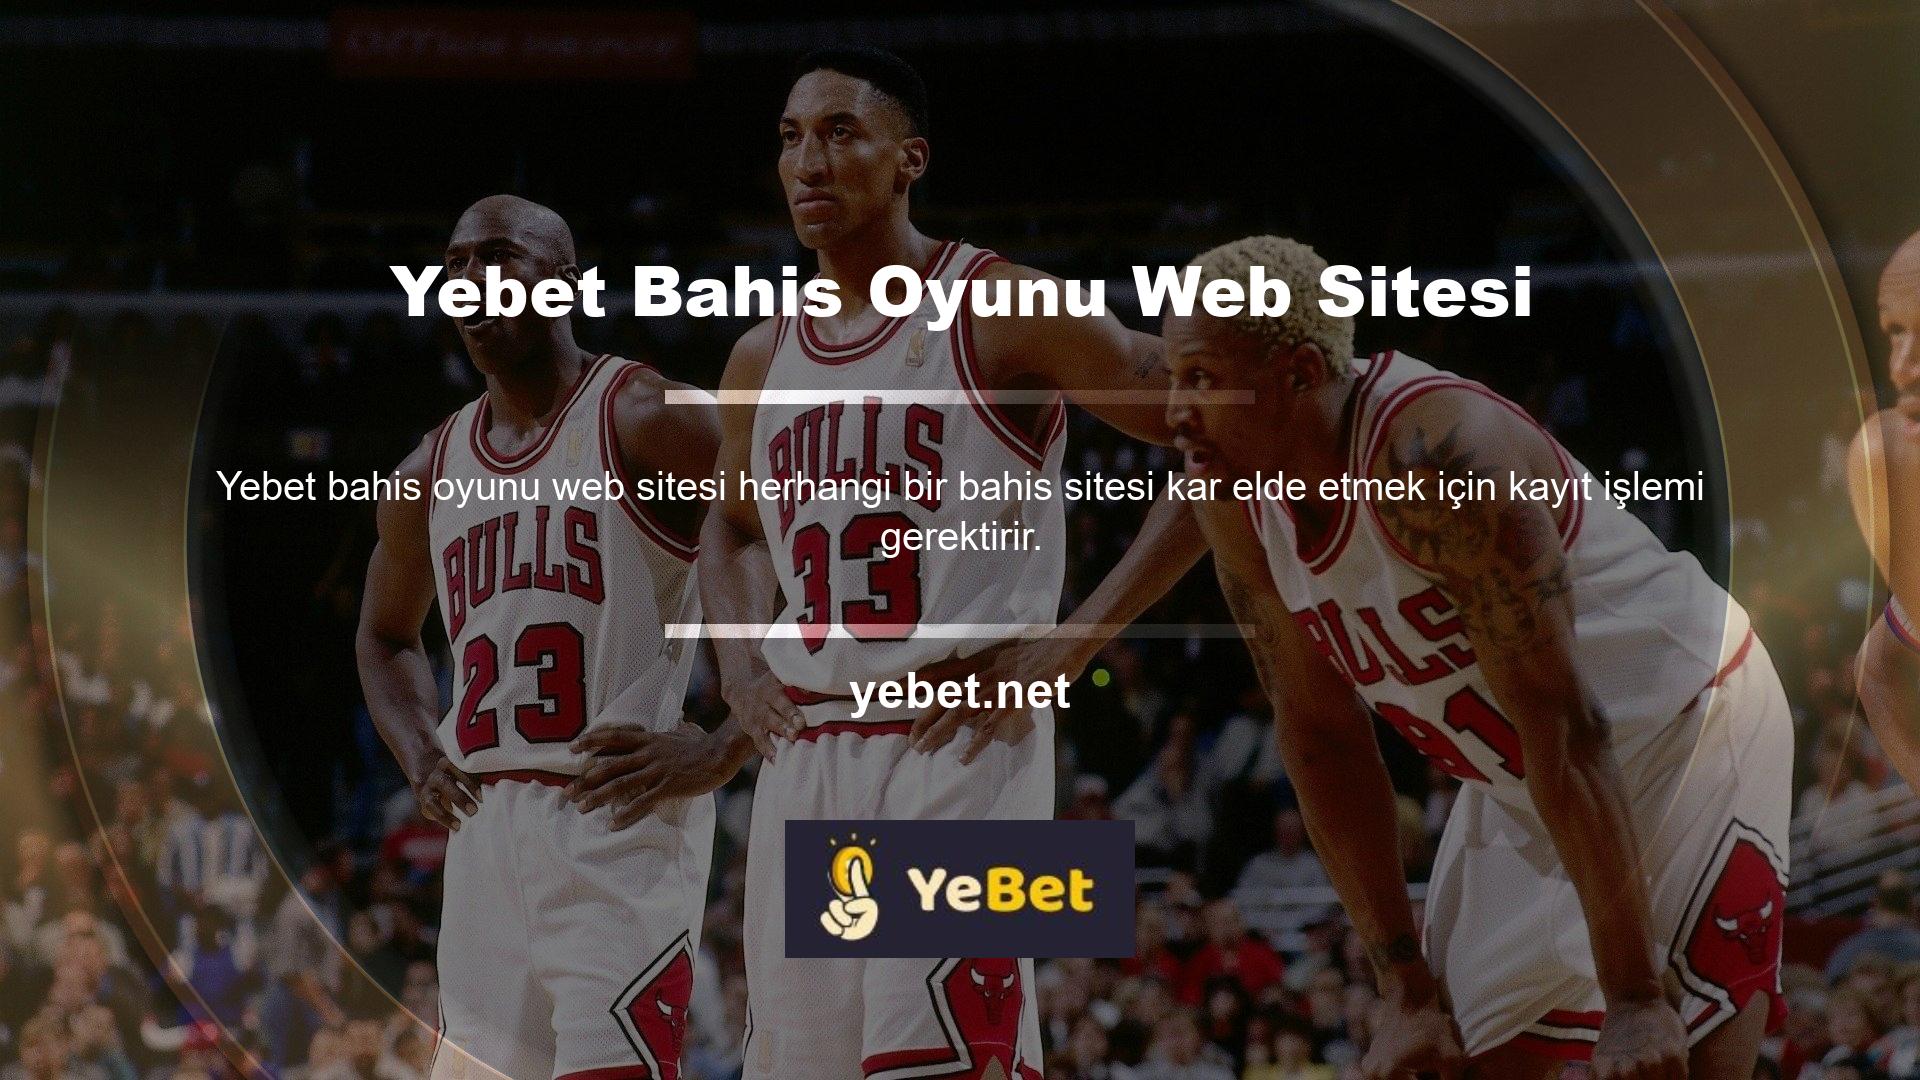 Yebet Bahis Oyunları web sitesinde üyelik işlemini tamamlamak birkaç dakika sürer ancak bu işlem tamamen ücretsizdir